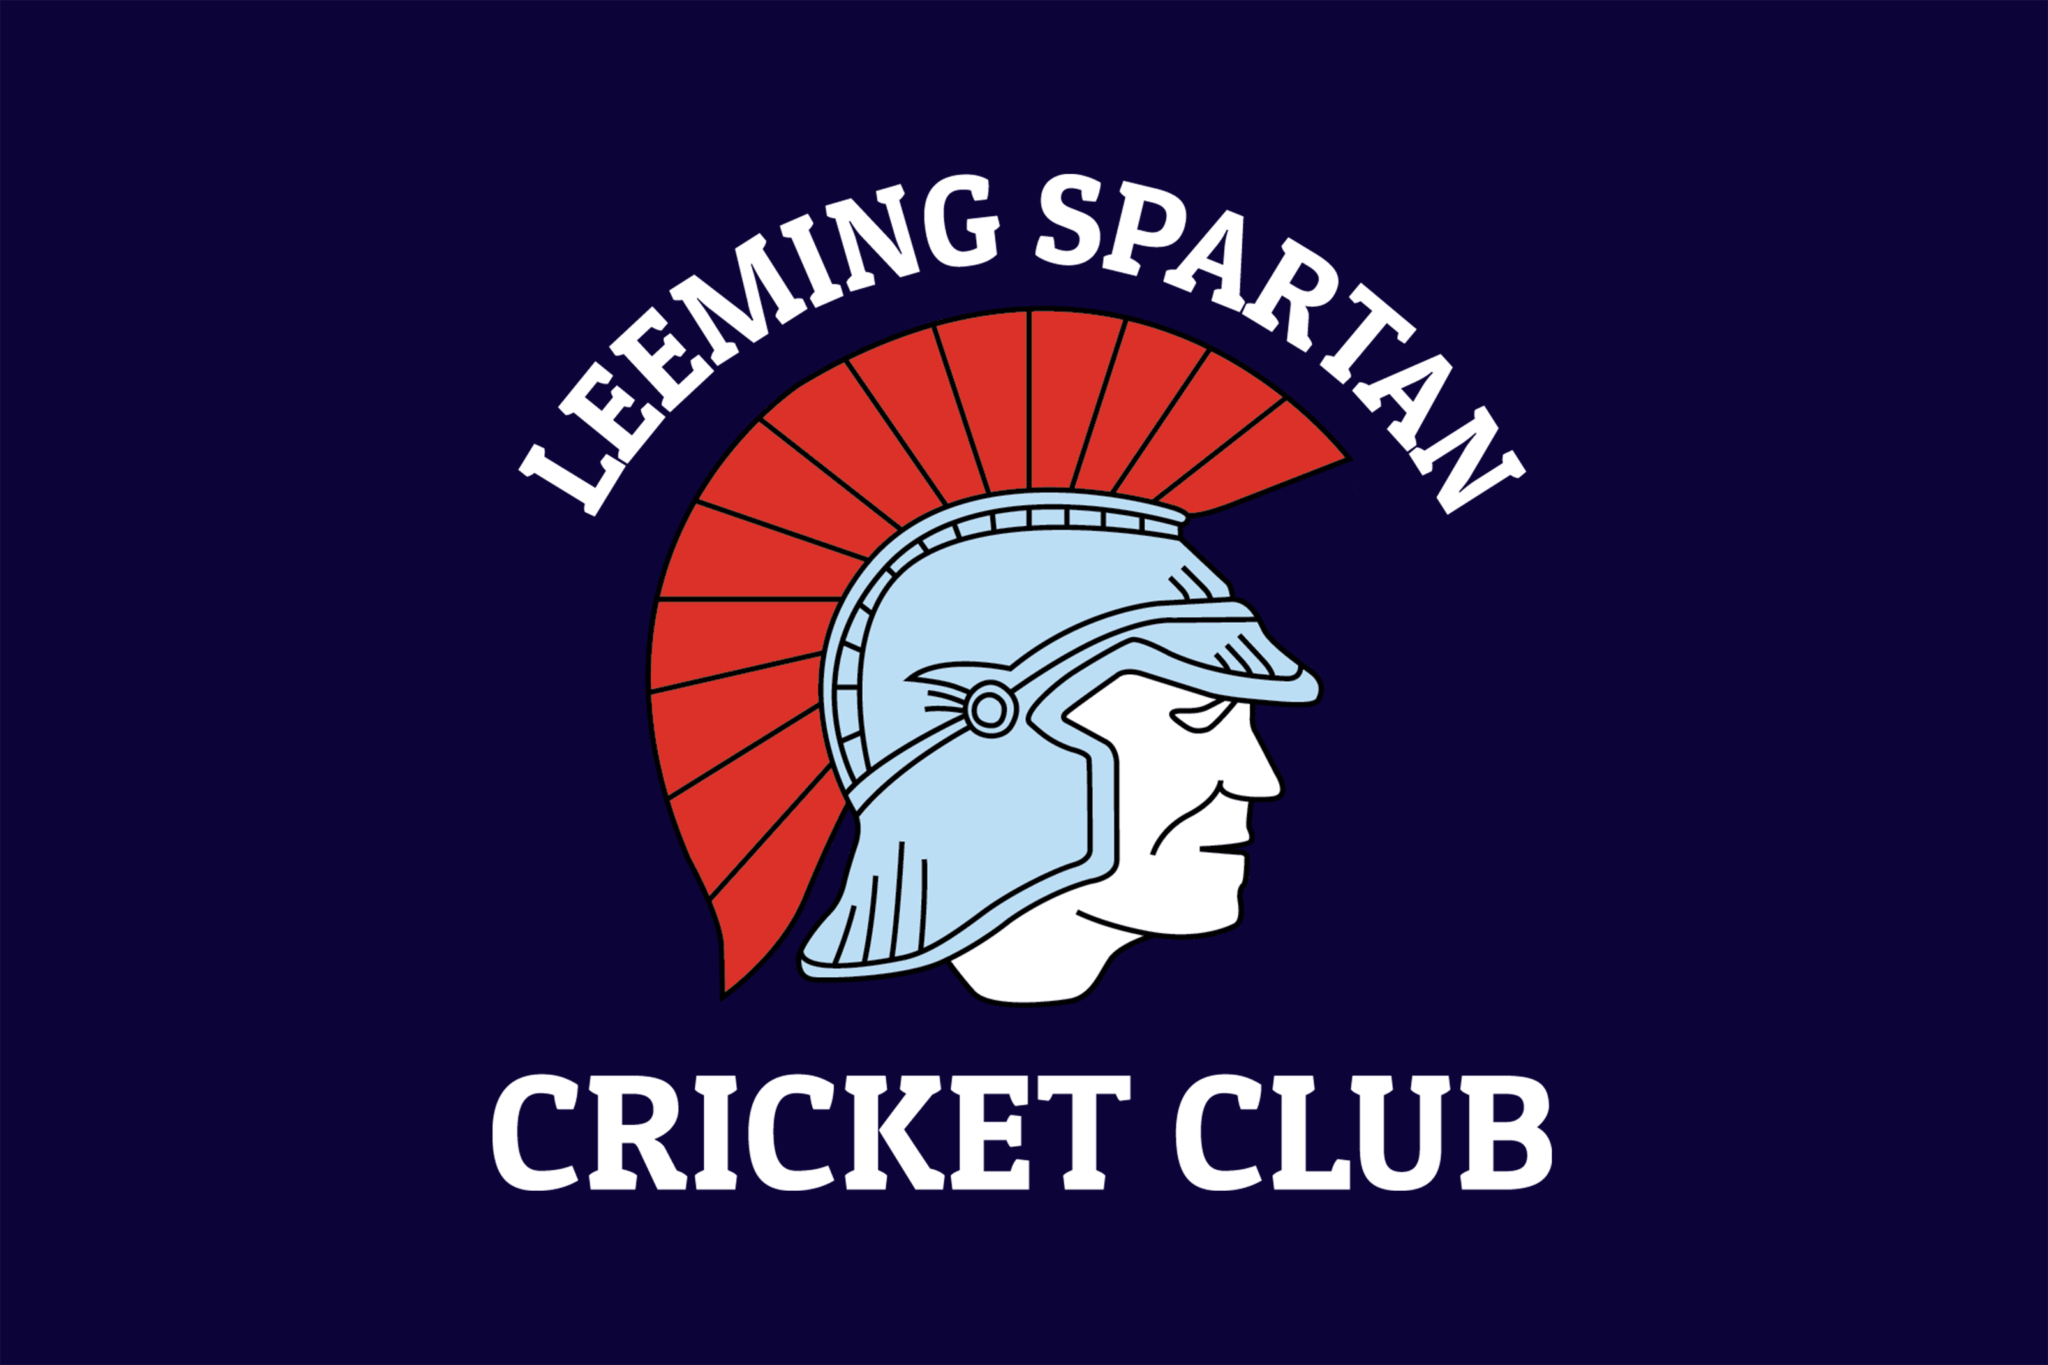 Spartan Flag Logo - The Spartan Flag | Leeming Spartan Cricket Club